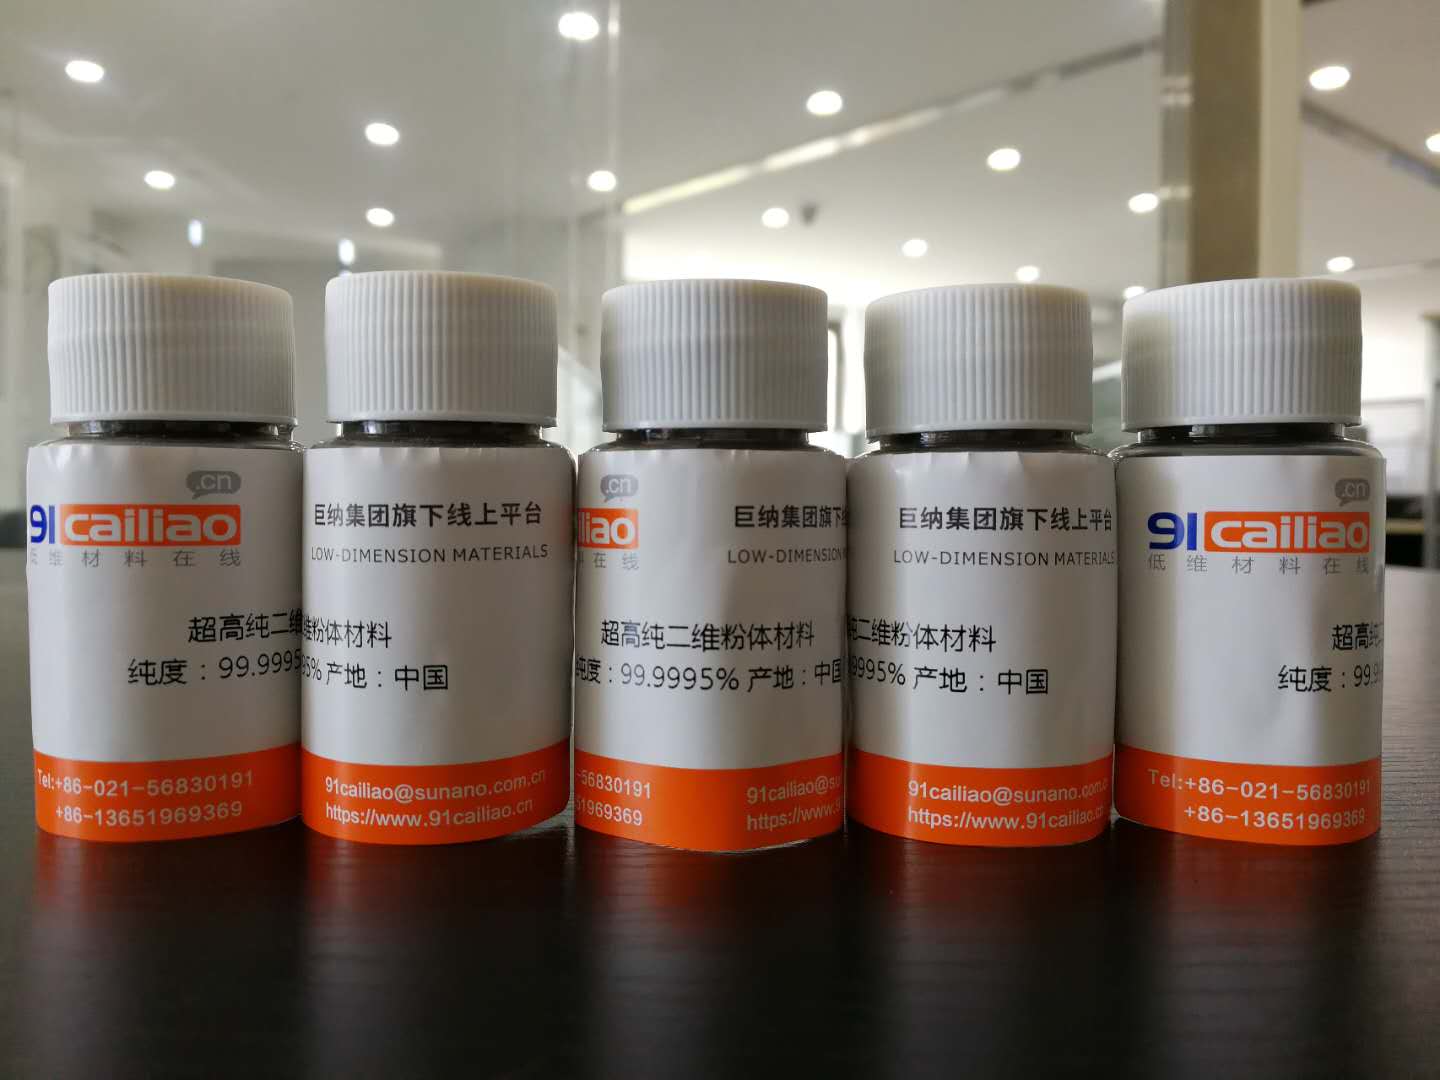 超高纯GeSe粉末 超高纯硒化锗粉末(1g)